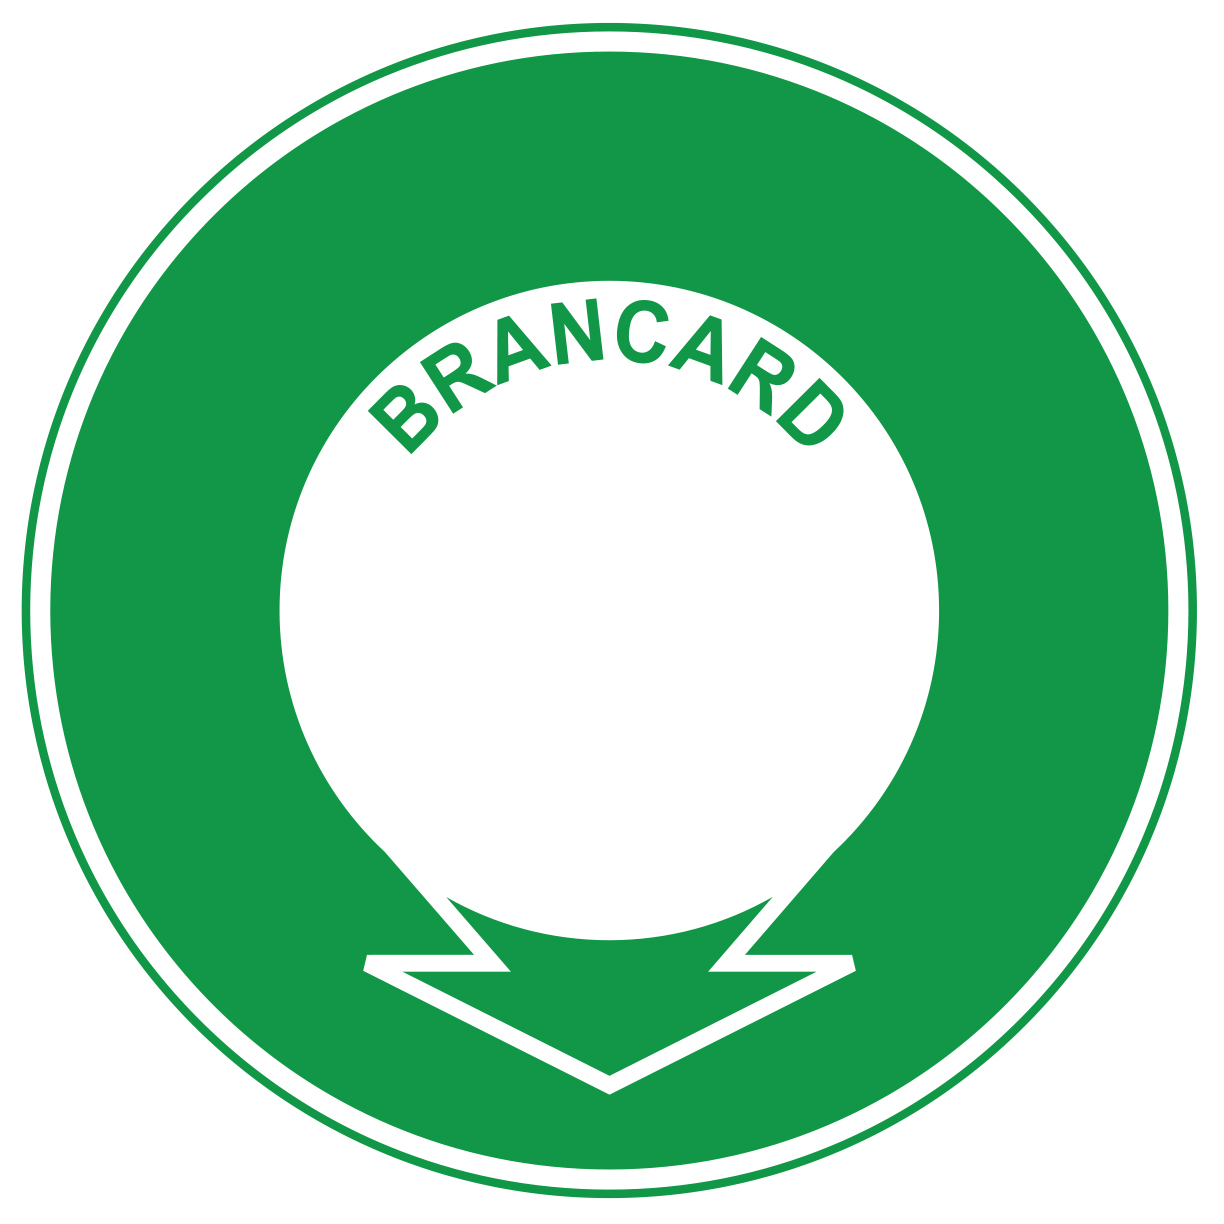 Brancard - E602 - étiquettes et panneaux d'évacuation, de sauvetage et de secours